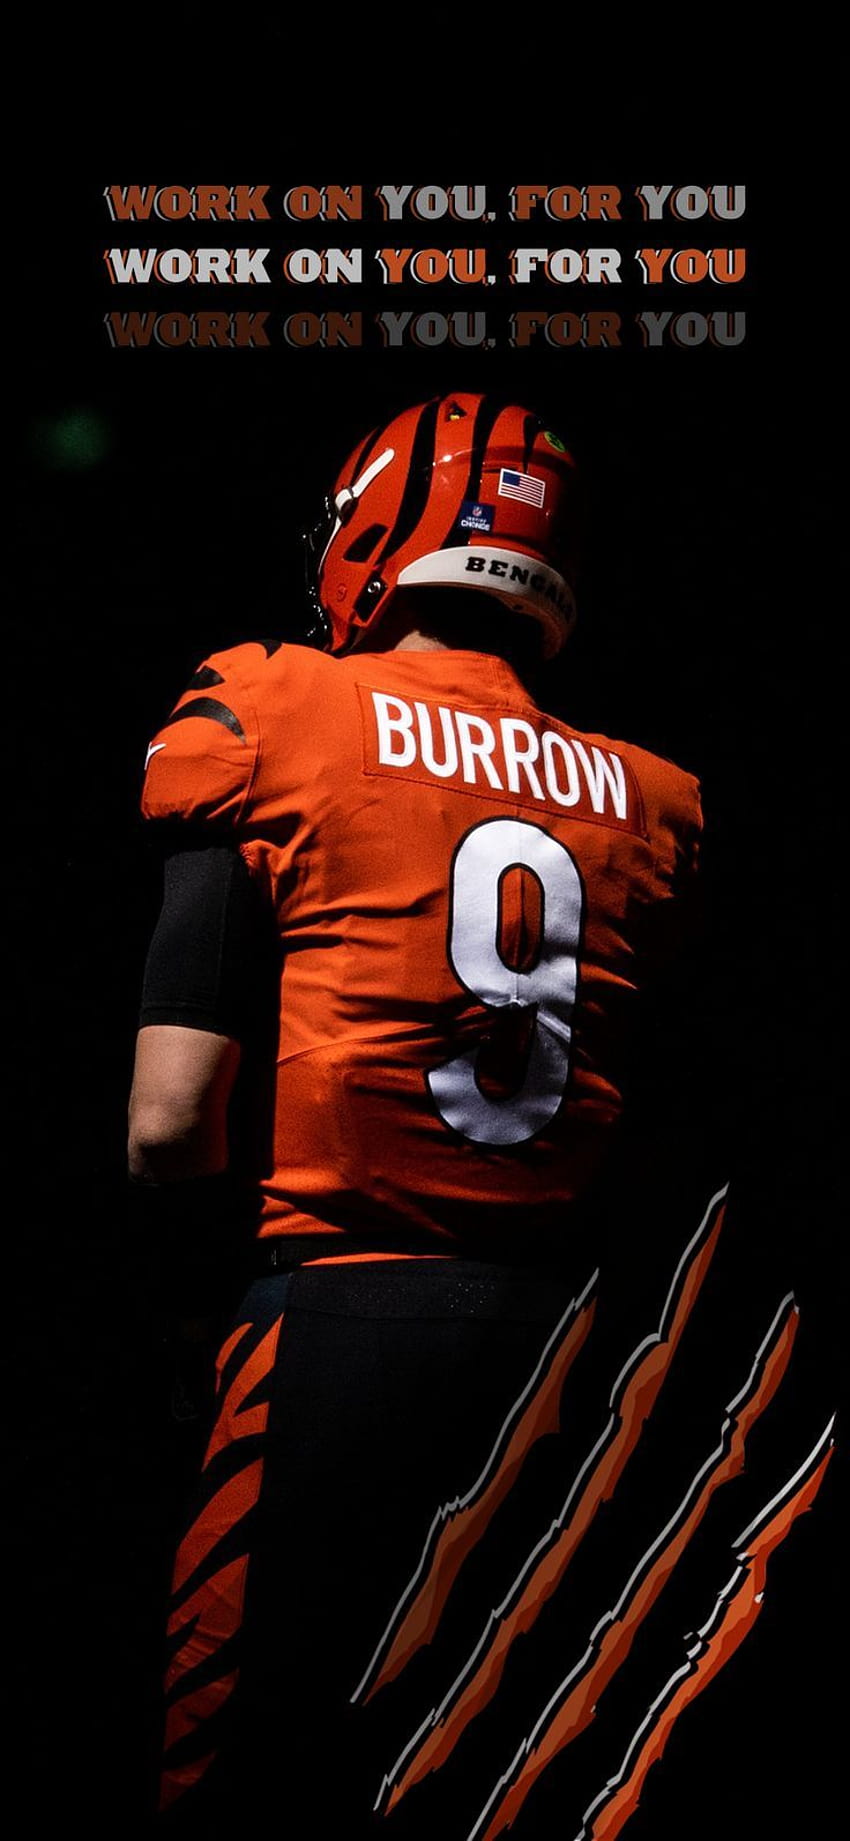 Bekerja pada Anda, untuk Anda. Joe Burrow. Cincinnati Bengals. NFL pada tahun 2022 wallpaper ponsel HD